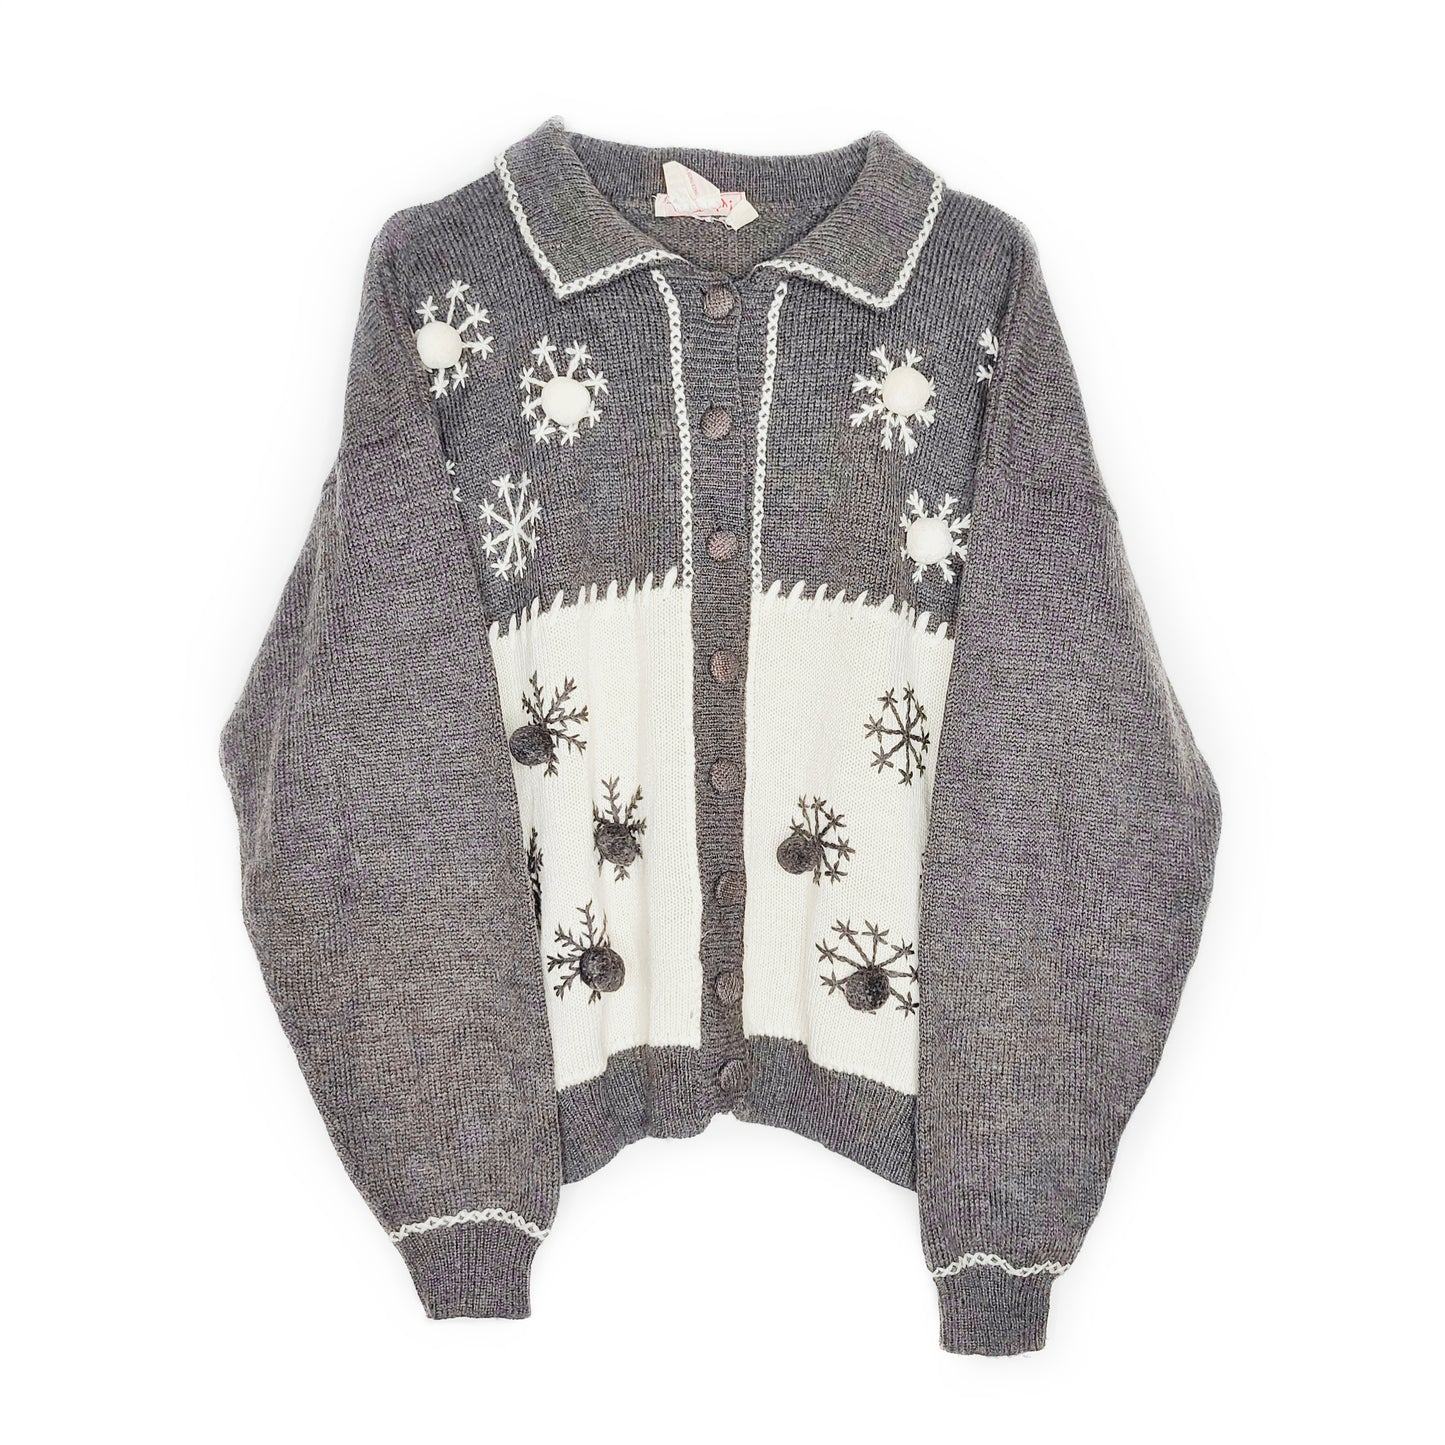 Cardigan hiver vintage kitch paris brode cute kawaii noel christmas sweater